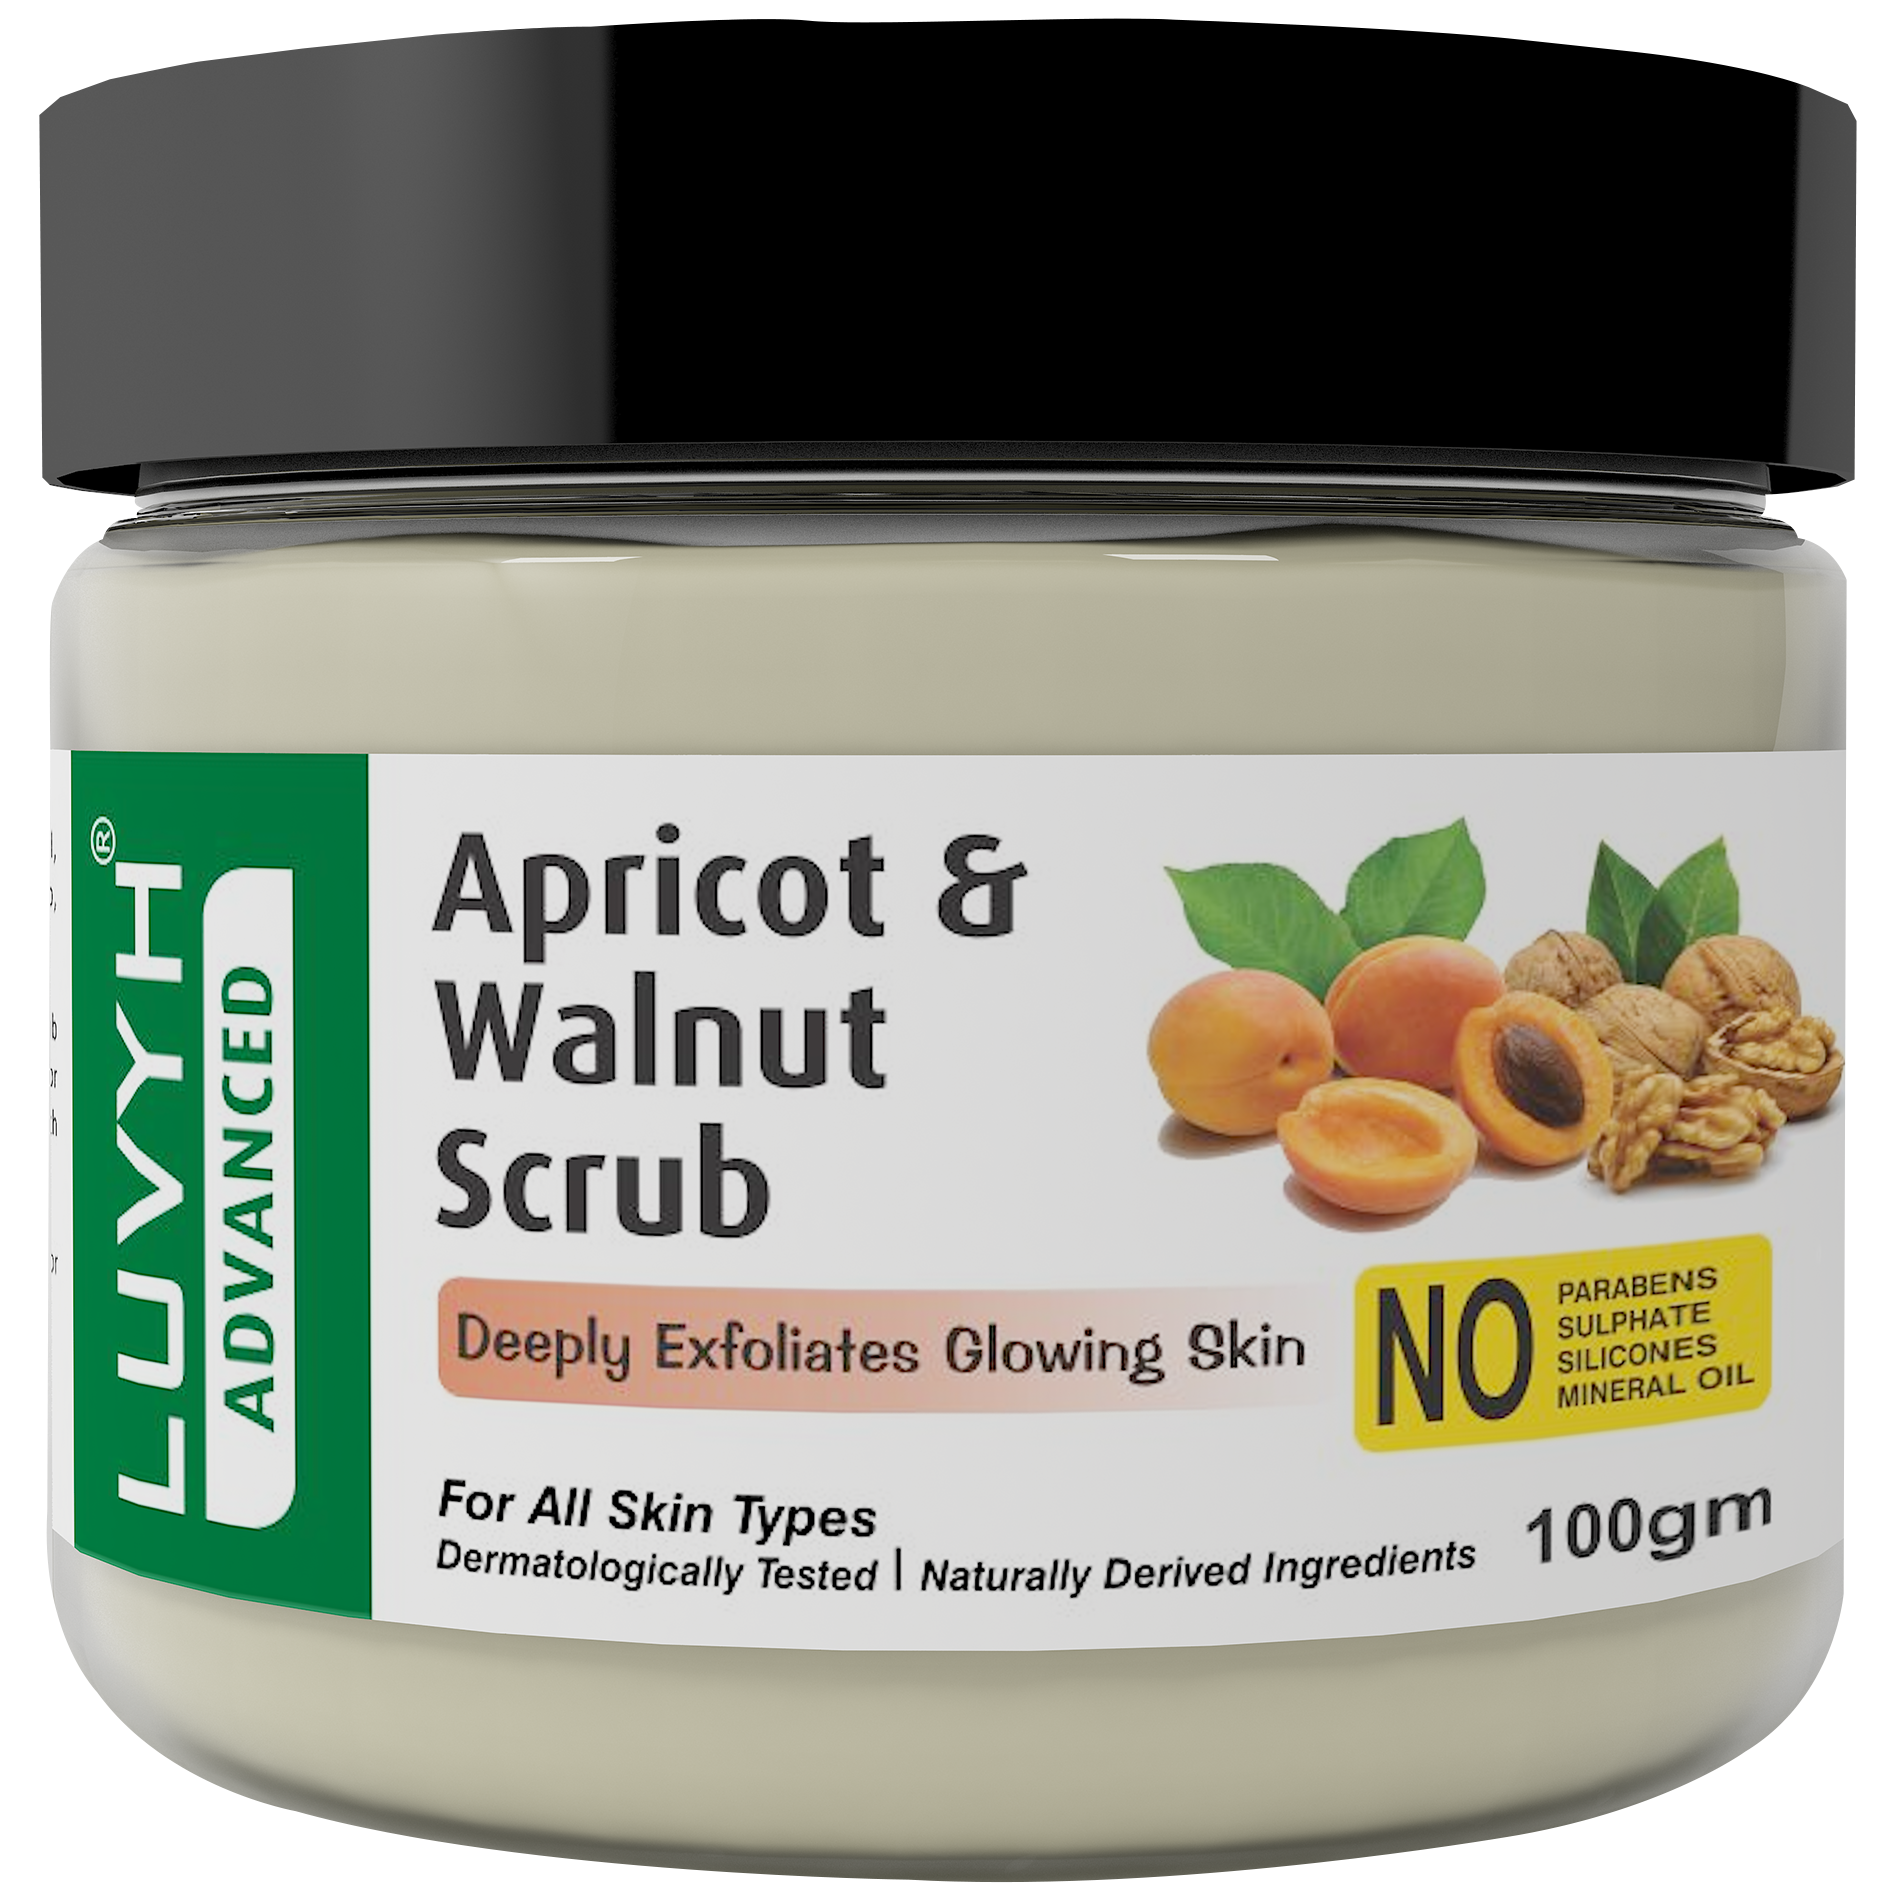 apricot scrub good for oily skin